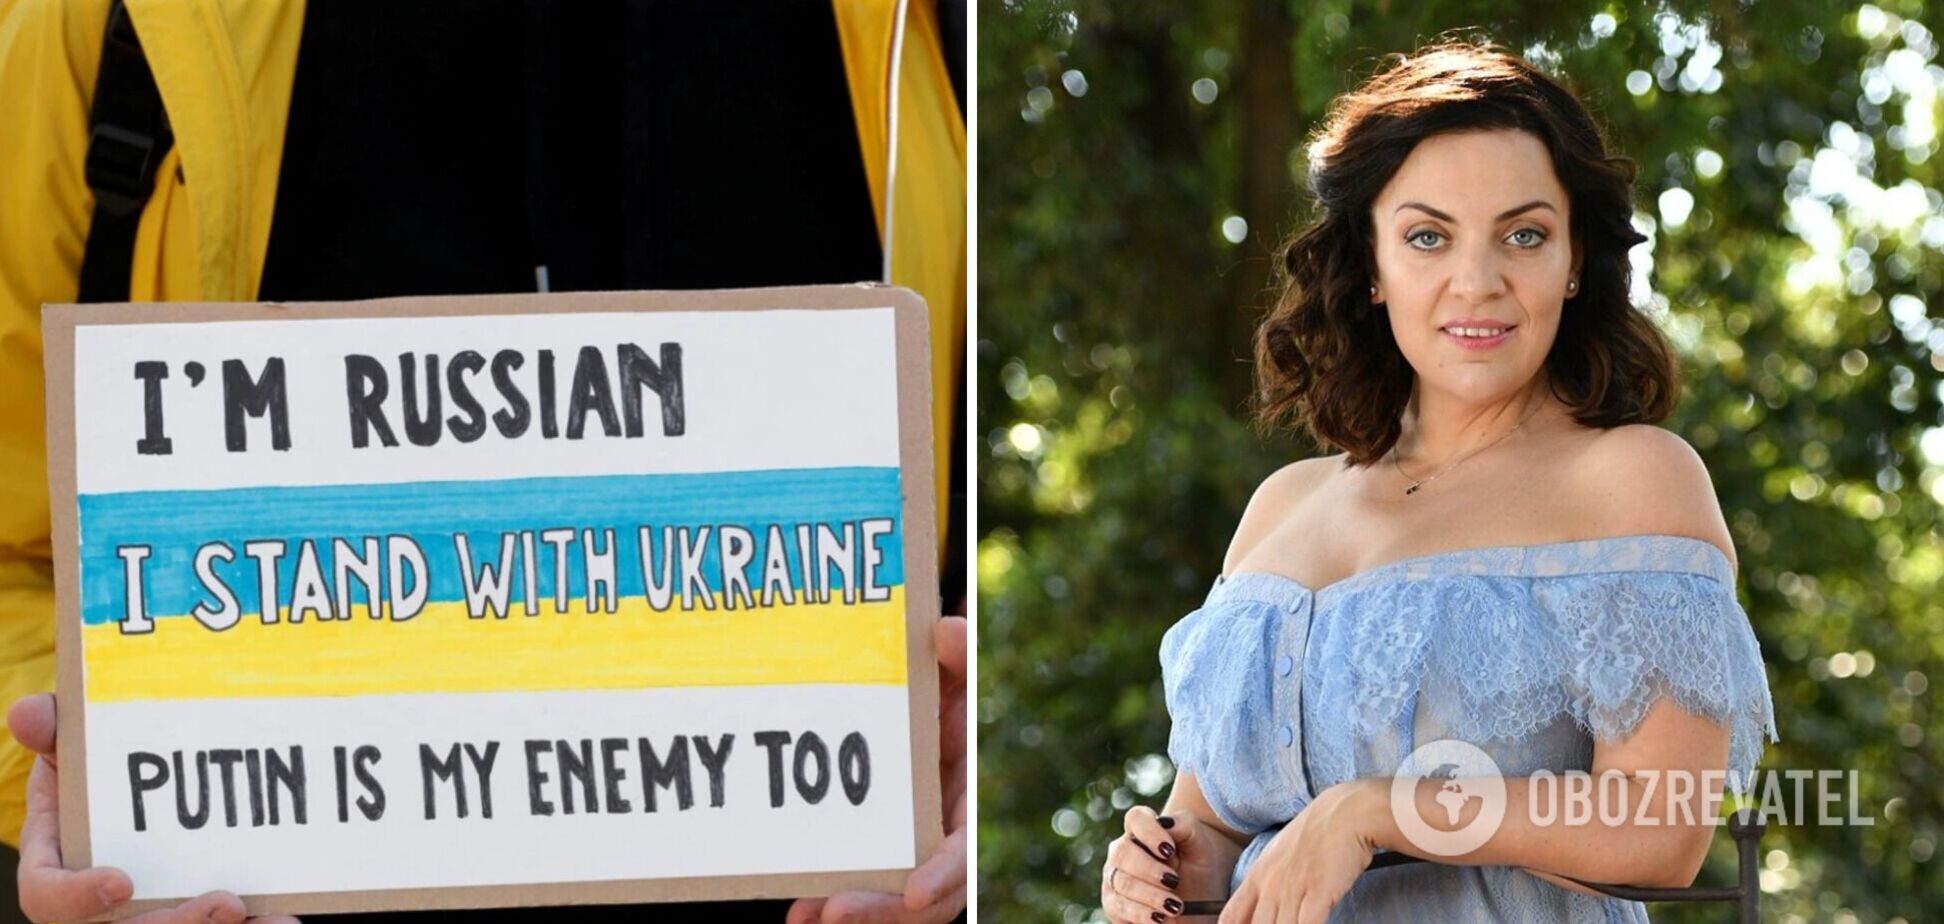 Наталья Холоденко вступилась за часть россиян: не все плохие. Украинцы слишком категоричны